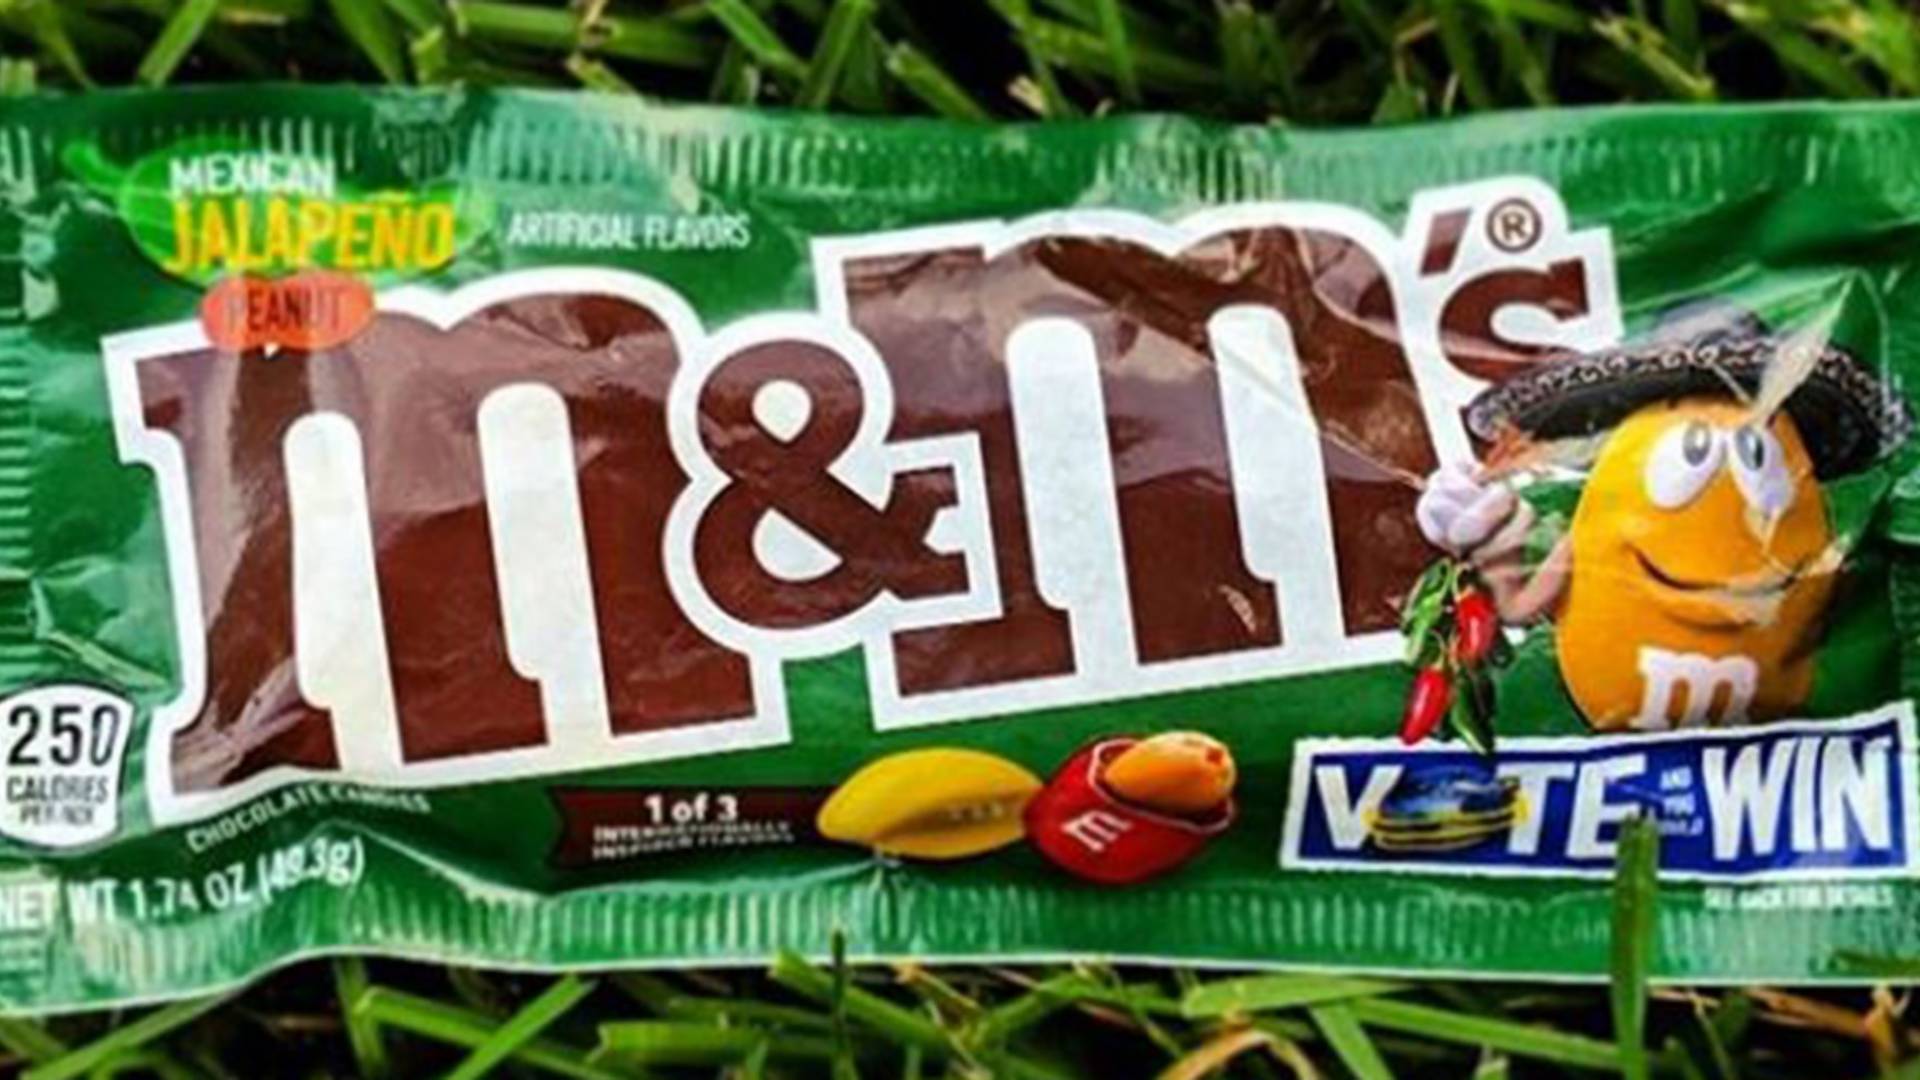 Fani słodyczy oszaleli - M&M's o smaku jalapeño. To nie koniec niespodzianek